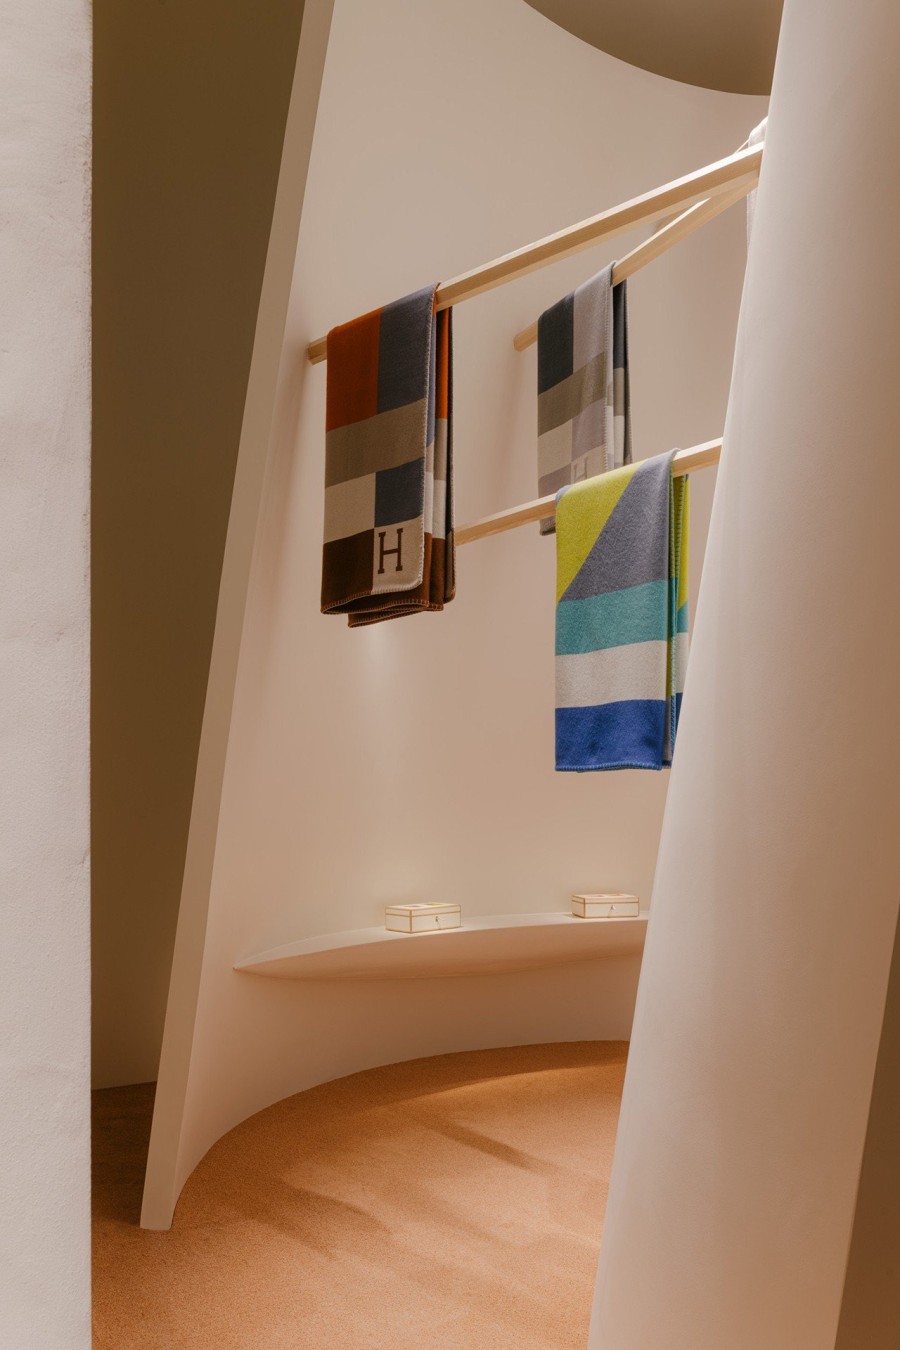 Το installation της Hermès στη Salone del mobile παρουσιάζει τα πιο φίνα αντικείμενα για το σπίτι - Φωτογραφία 17